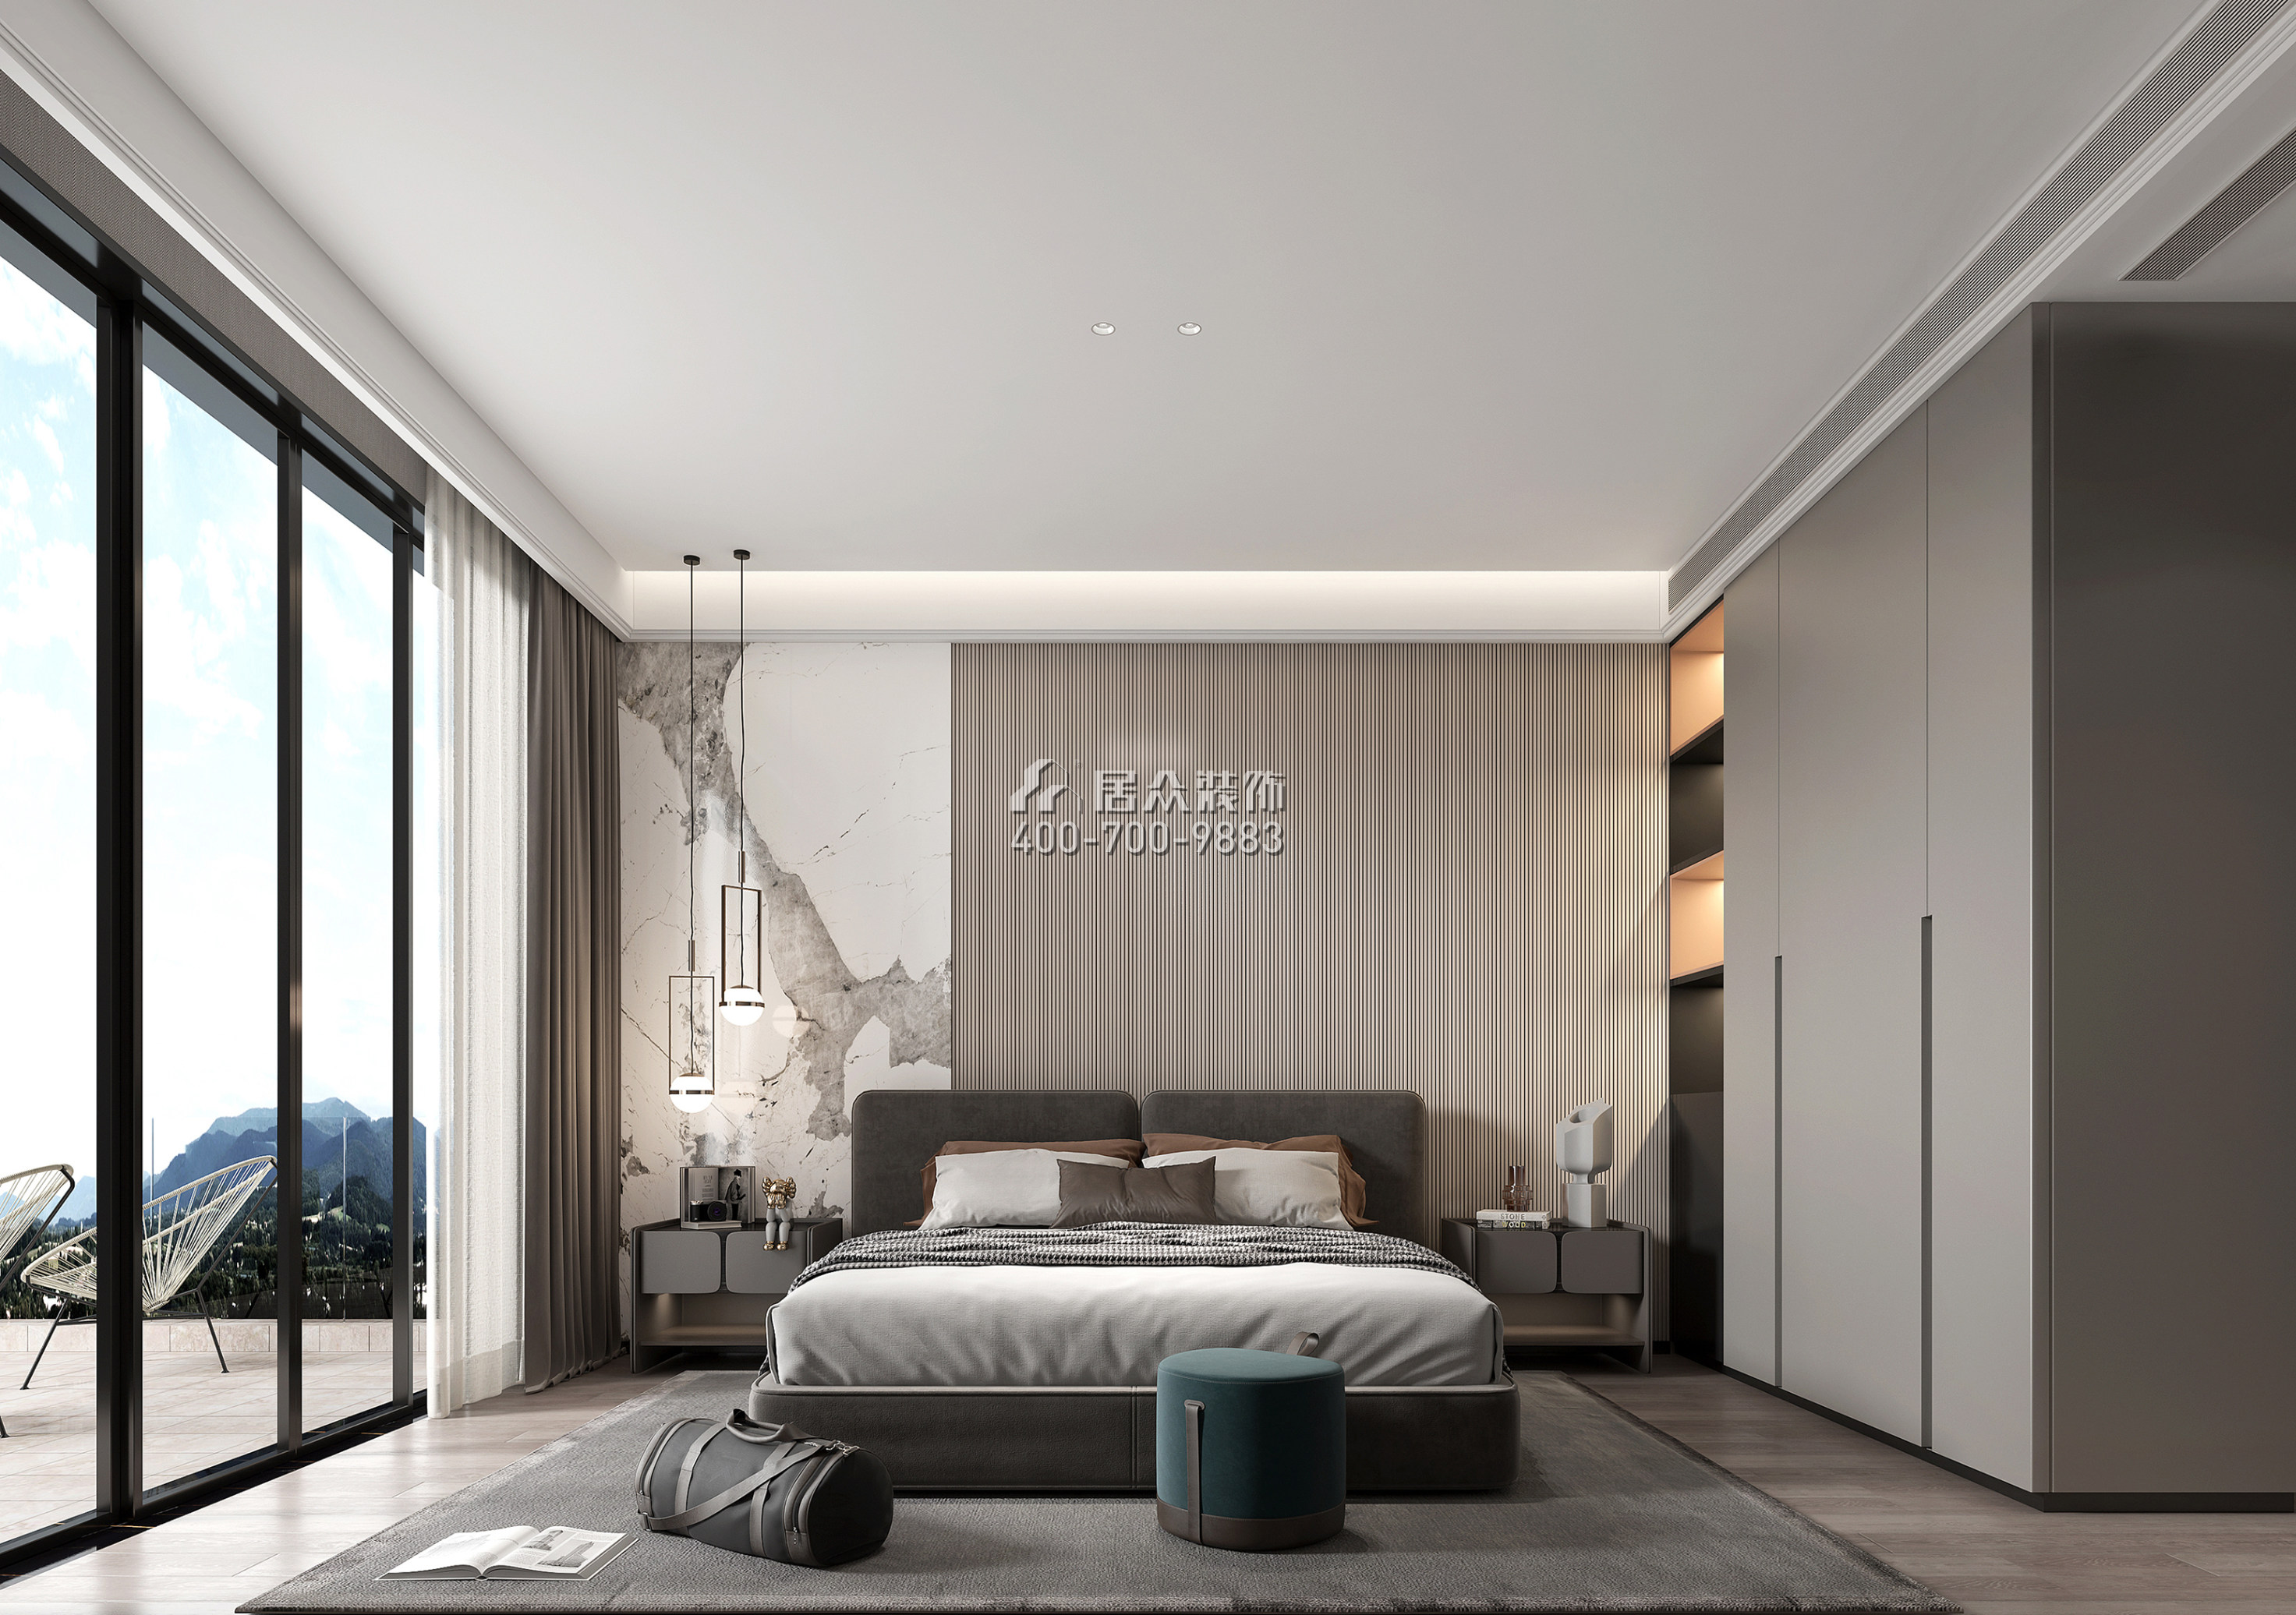 海逸豪庭900平方米現代簡約風格別墅戶型臥室裝修效果圖